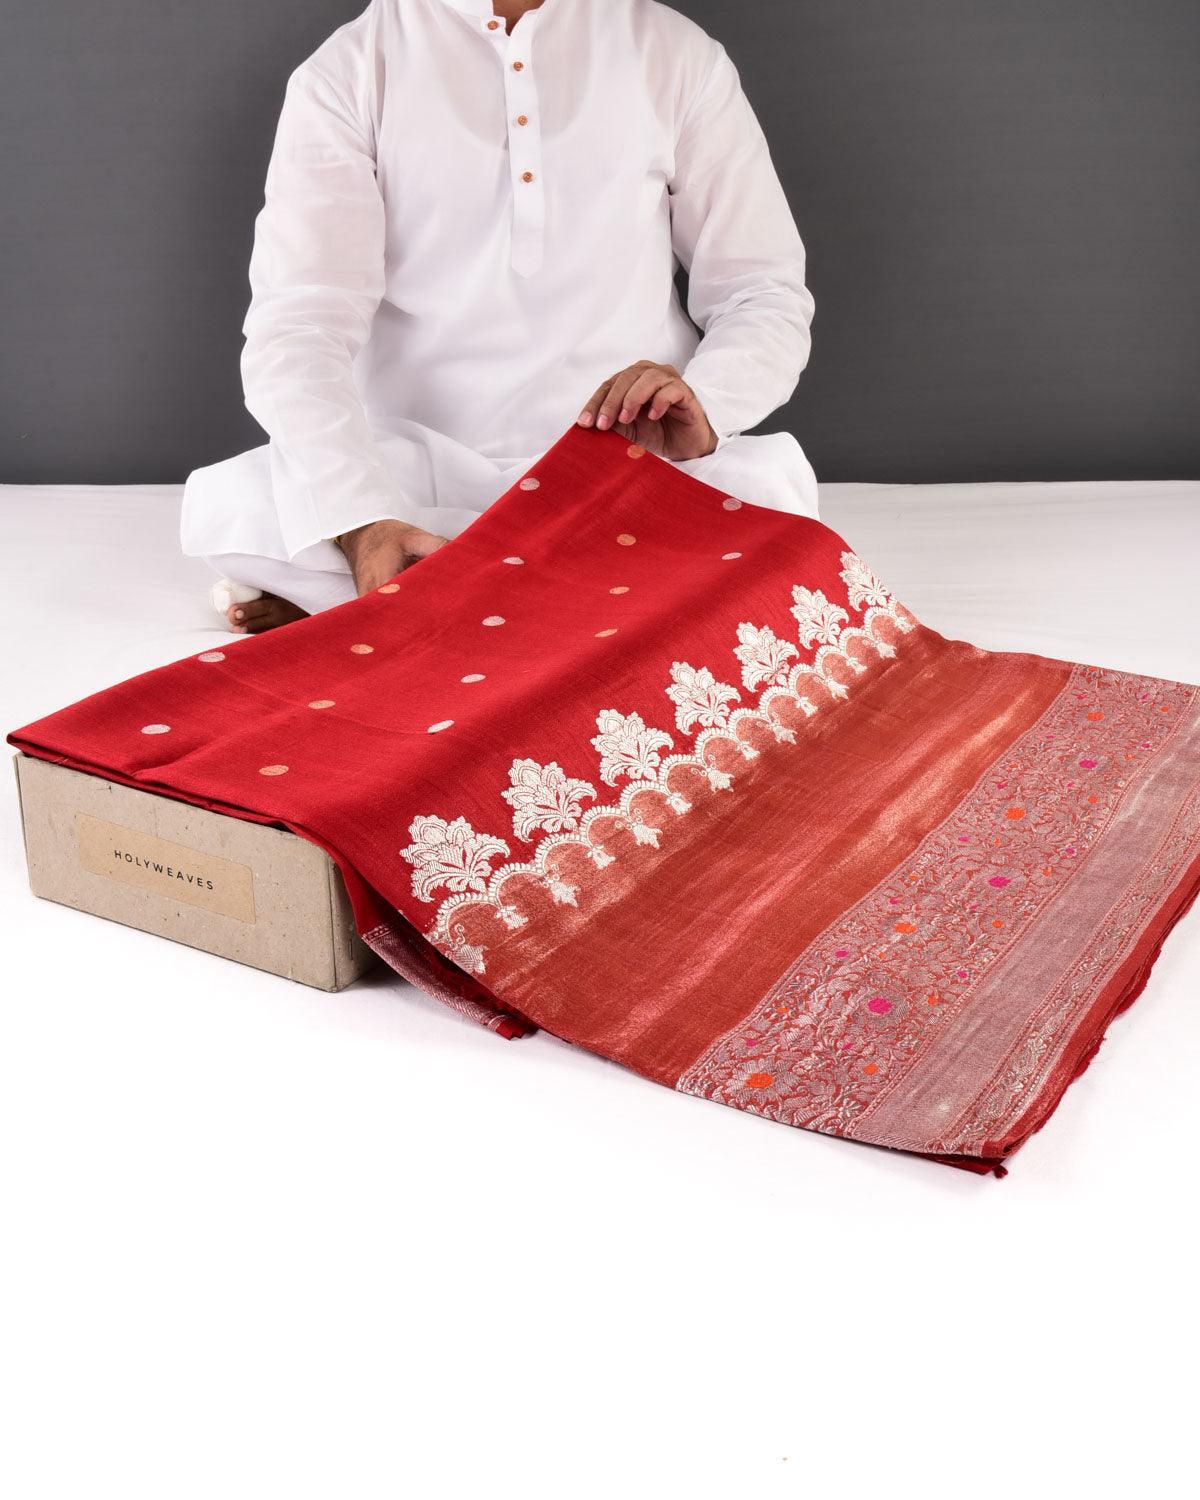 Bridal Red Banarasi Gold & Silver Ashrafi Buti Kadhuan Brocade Handwoven Tasar Georgette Saree - By HolyWeaves, Benares